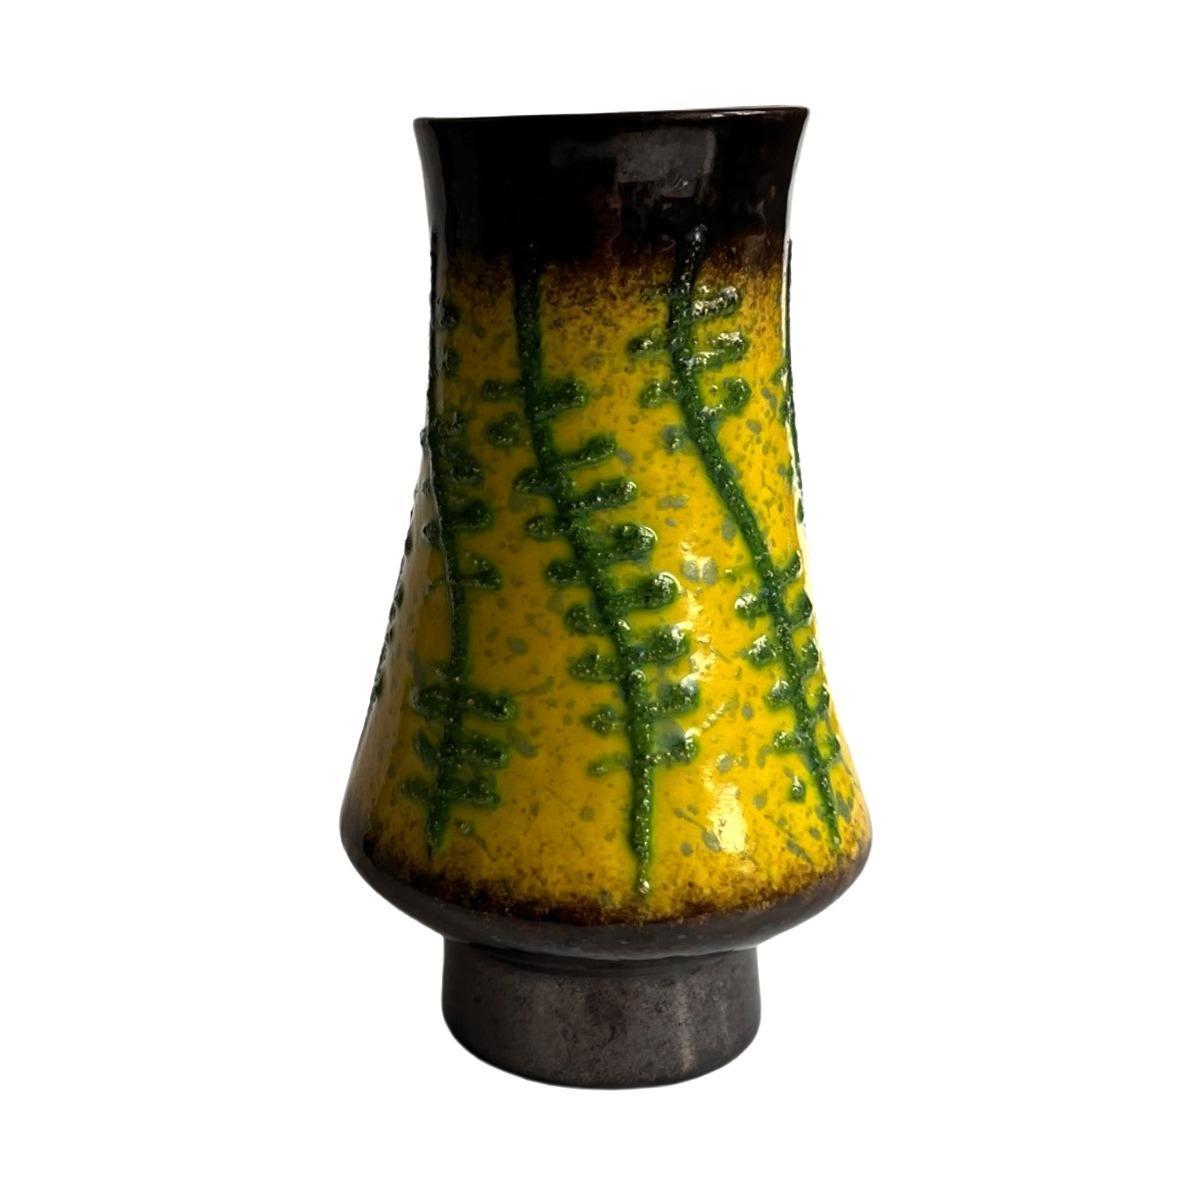 Wazon ceramiczny fat lava Strehla Keramik, Niemcy lata 60. nr. 5